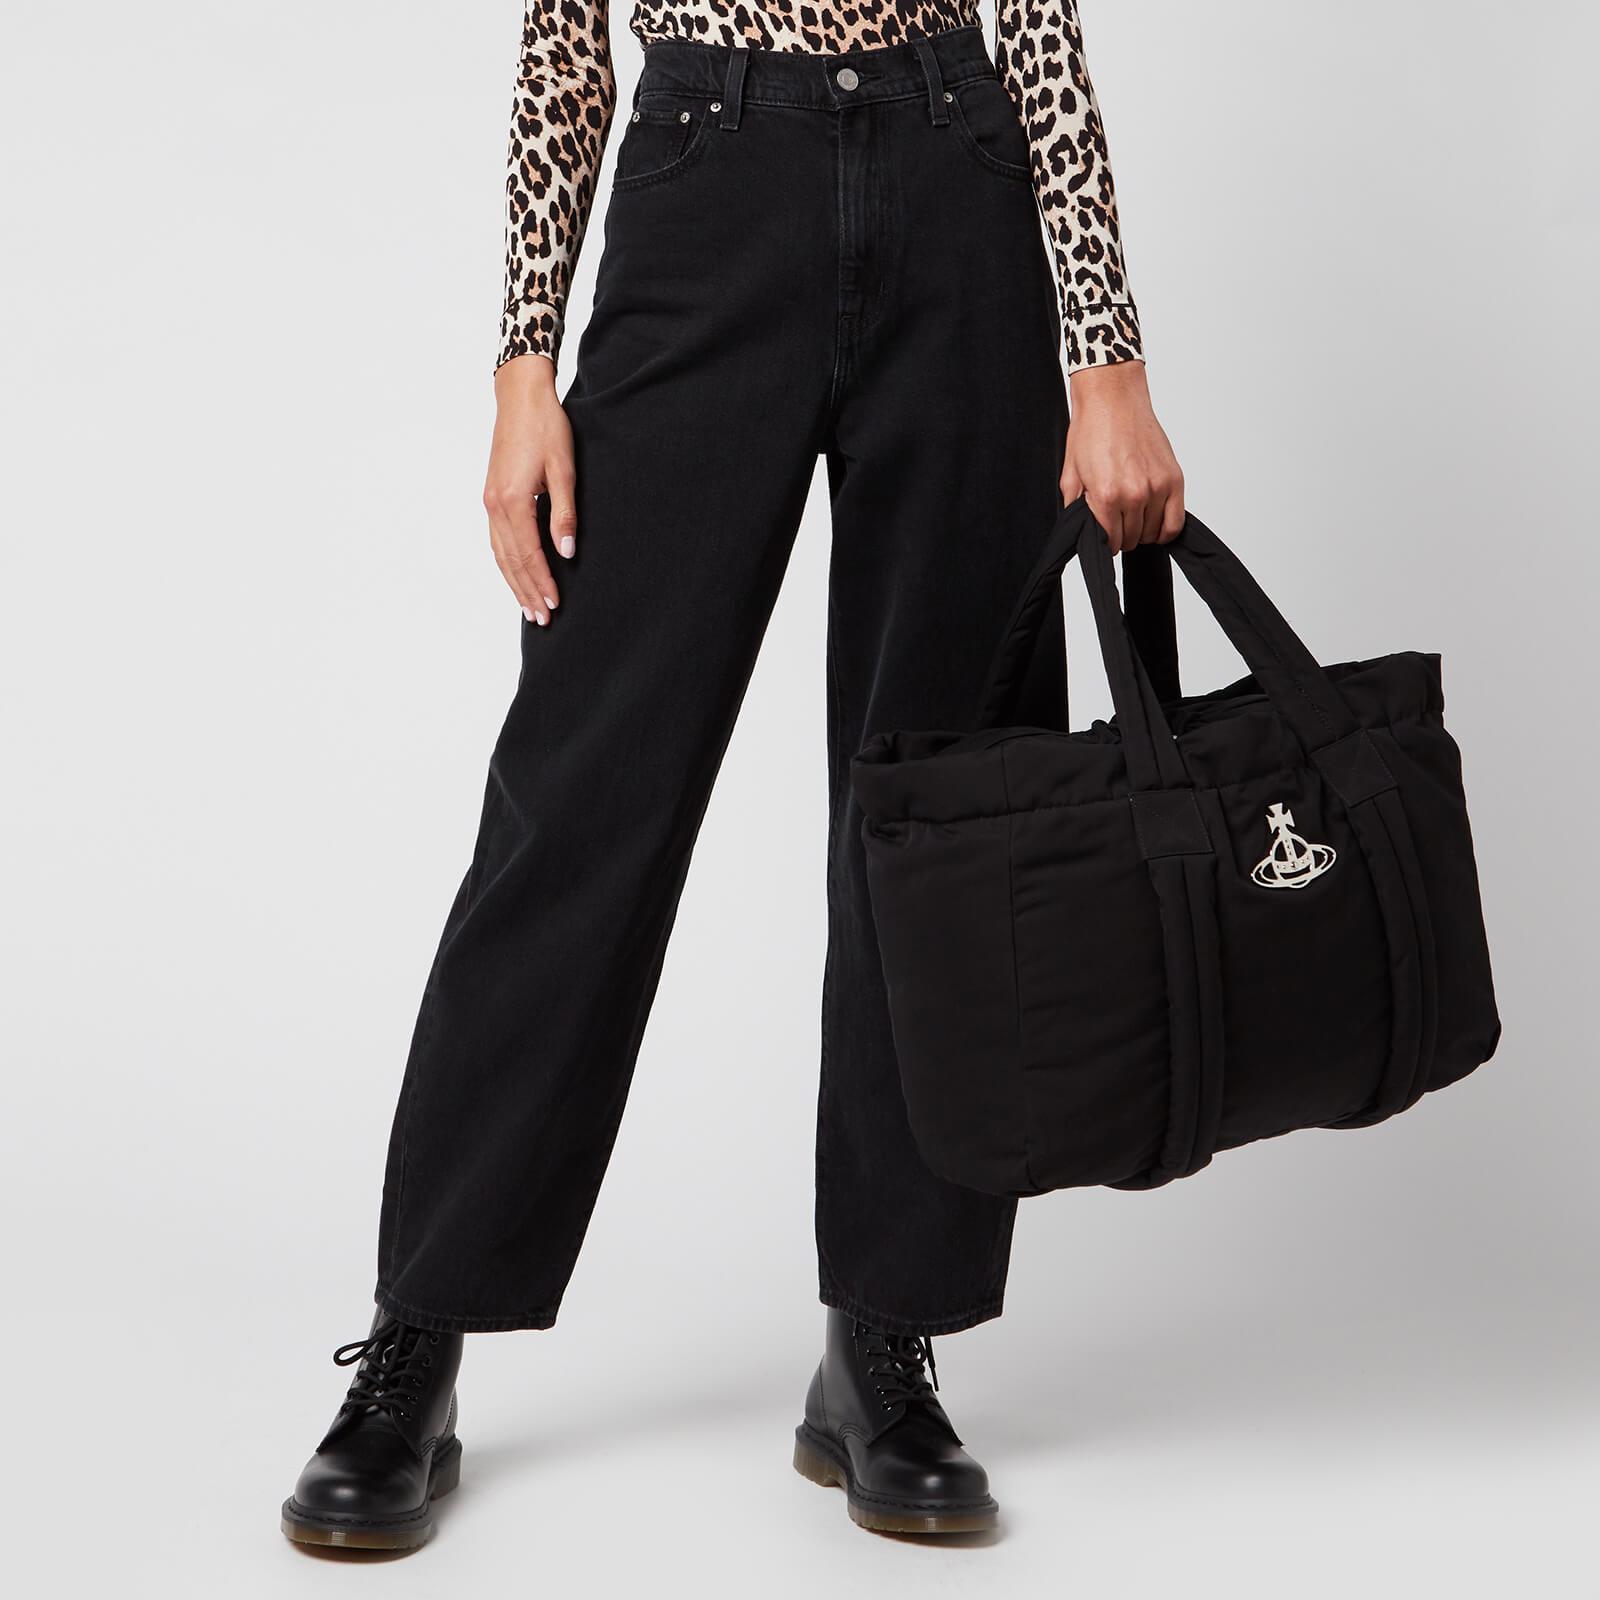 Vivienne Westwood Hilary Tote Bag in Black | Lyst